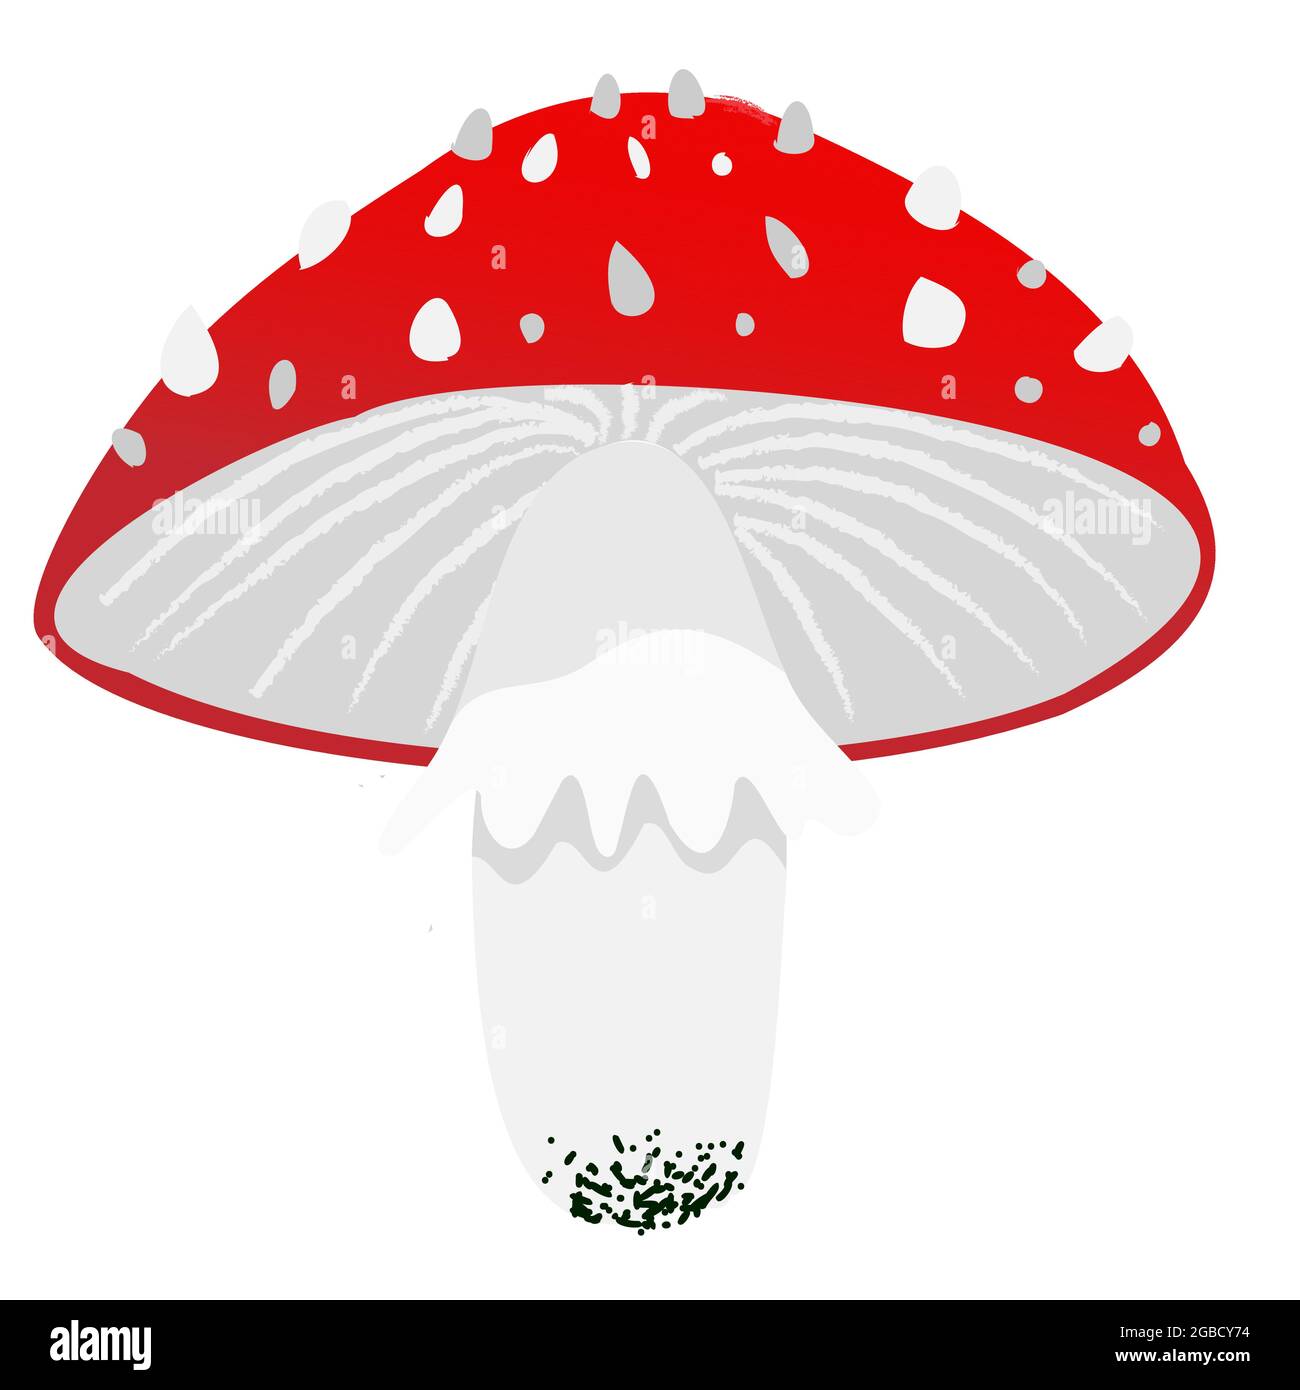 Amanita roten Pilz in Cartoon flach einfachen Stil. Vektorgrafik Clipart auf weißem Hintergrund isoliert Stock Vektor